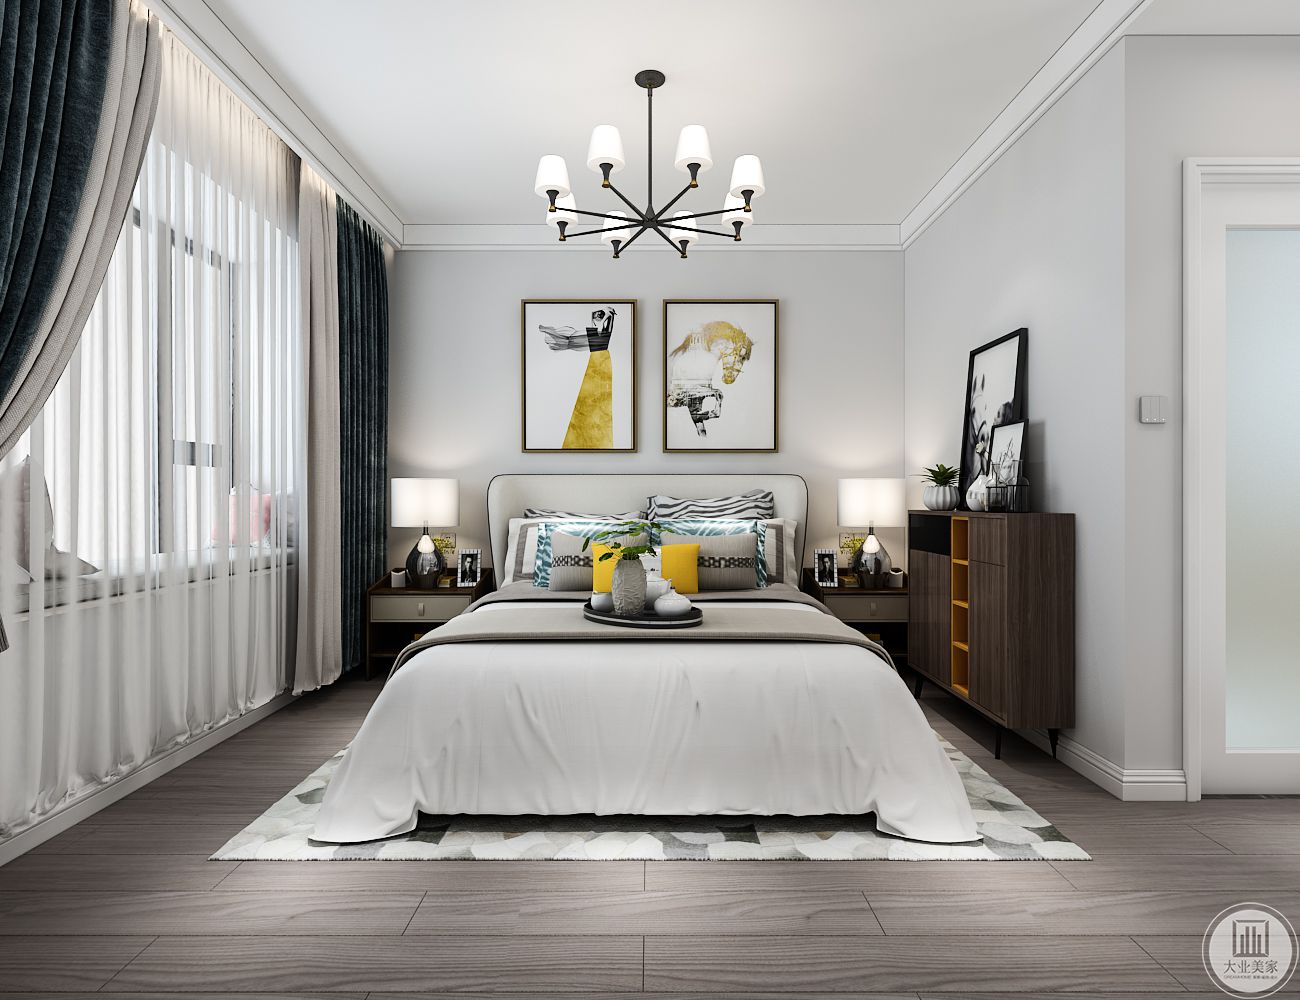 主卧室床头背景墙采用浅灰色，墙面悬挂两幅现代风格抽象画做装饰，两侧的采用深色实木床头柜，一侧靠墙的深色实木柜。